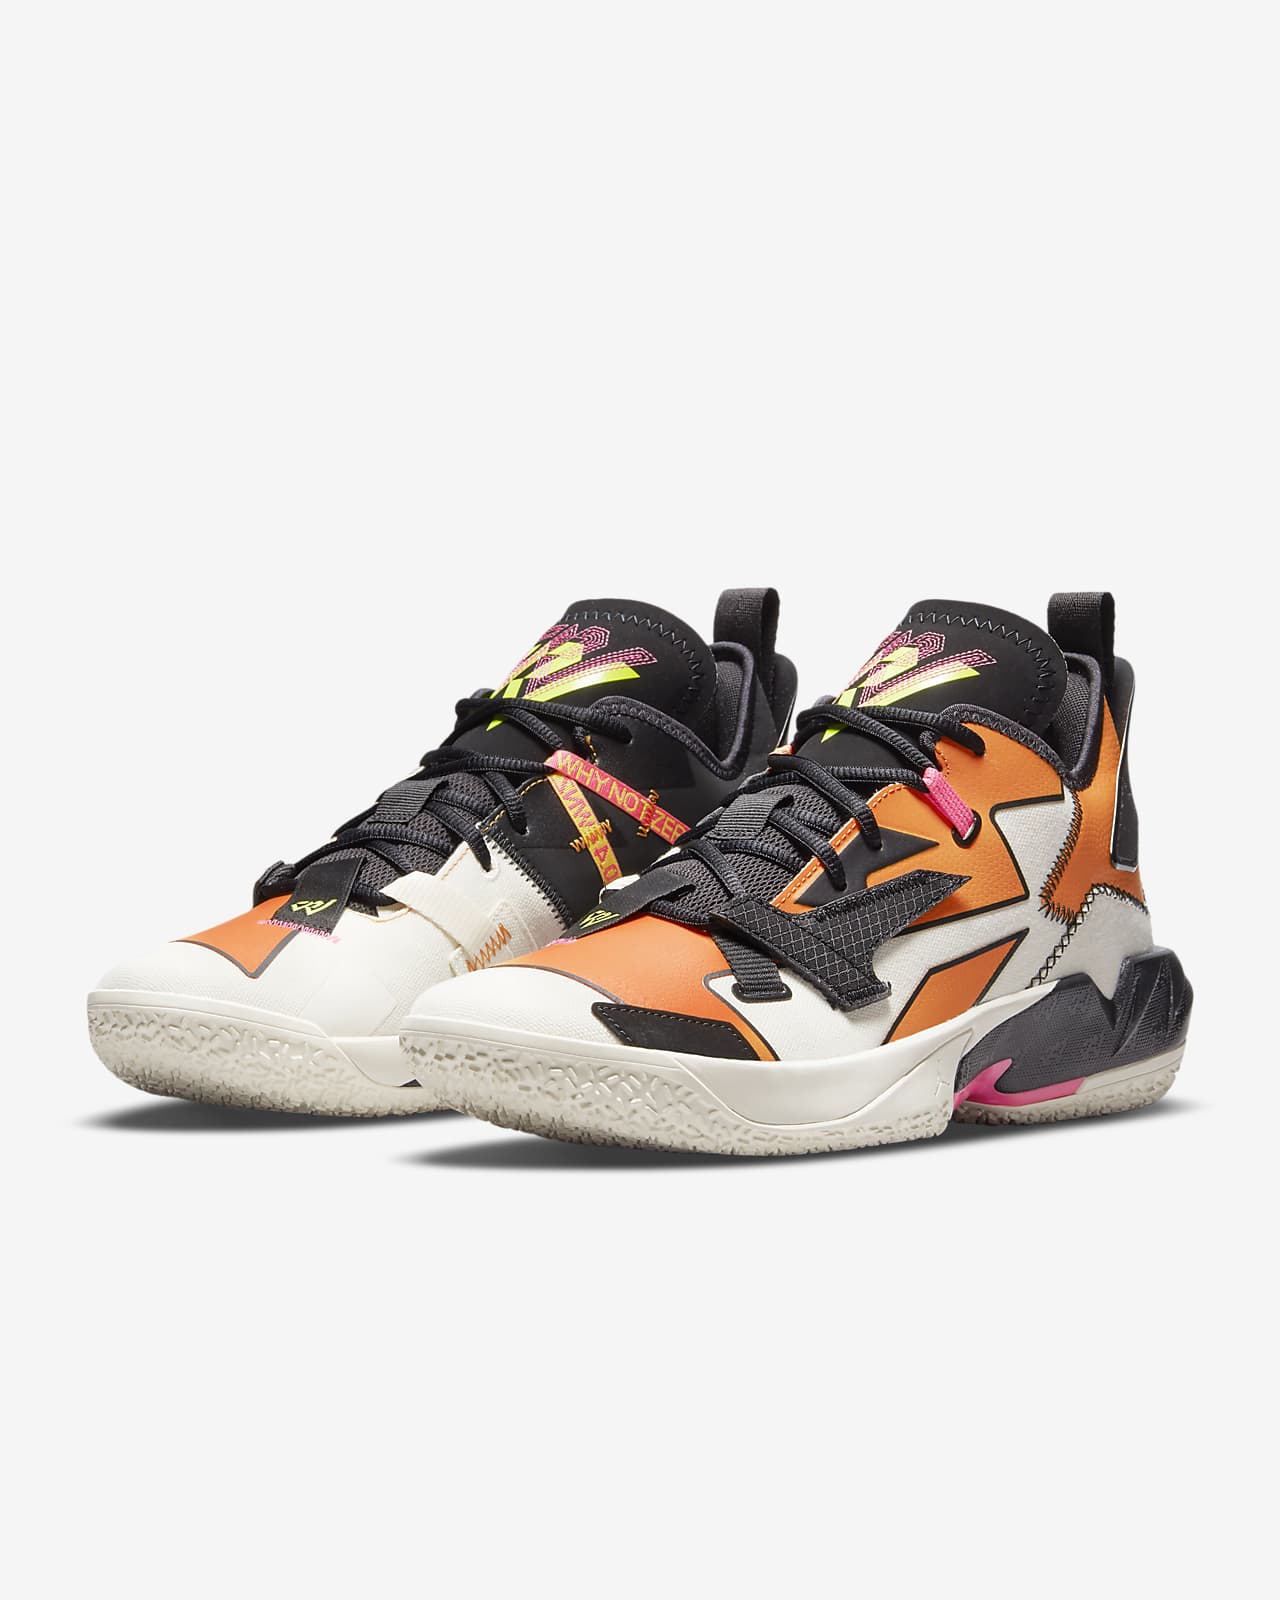 Jordan 'Why Not?' Zer0.4 Shoes. Nike.com